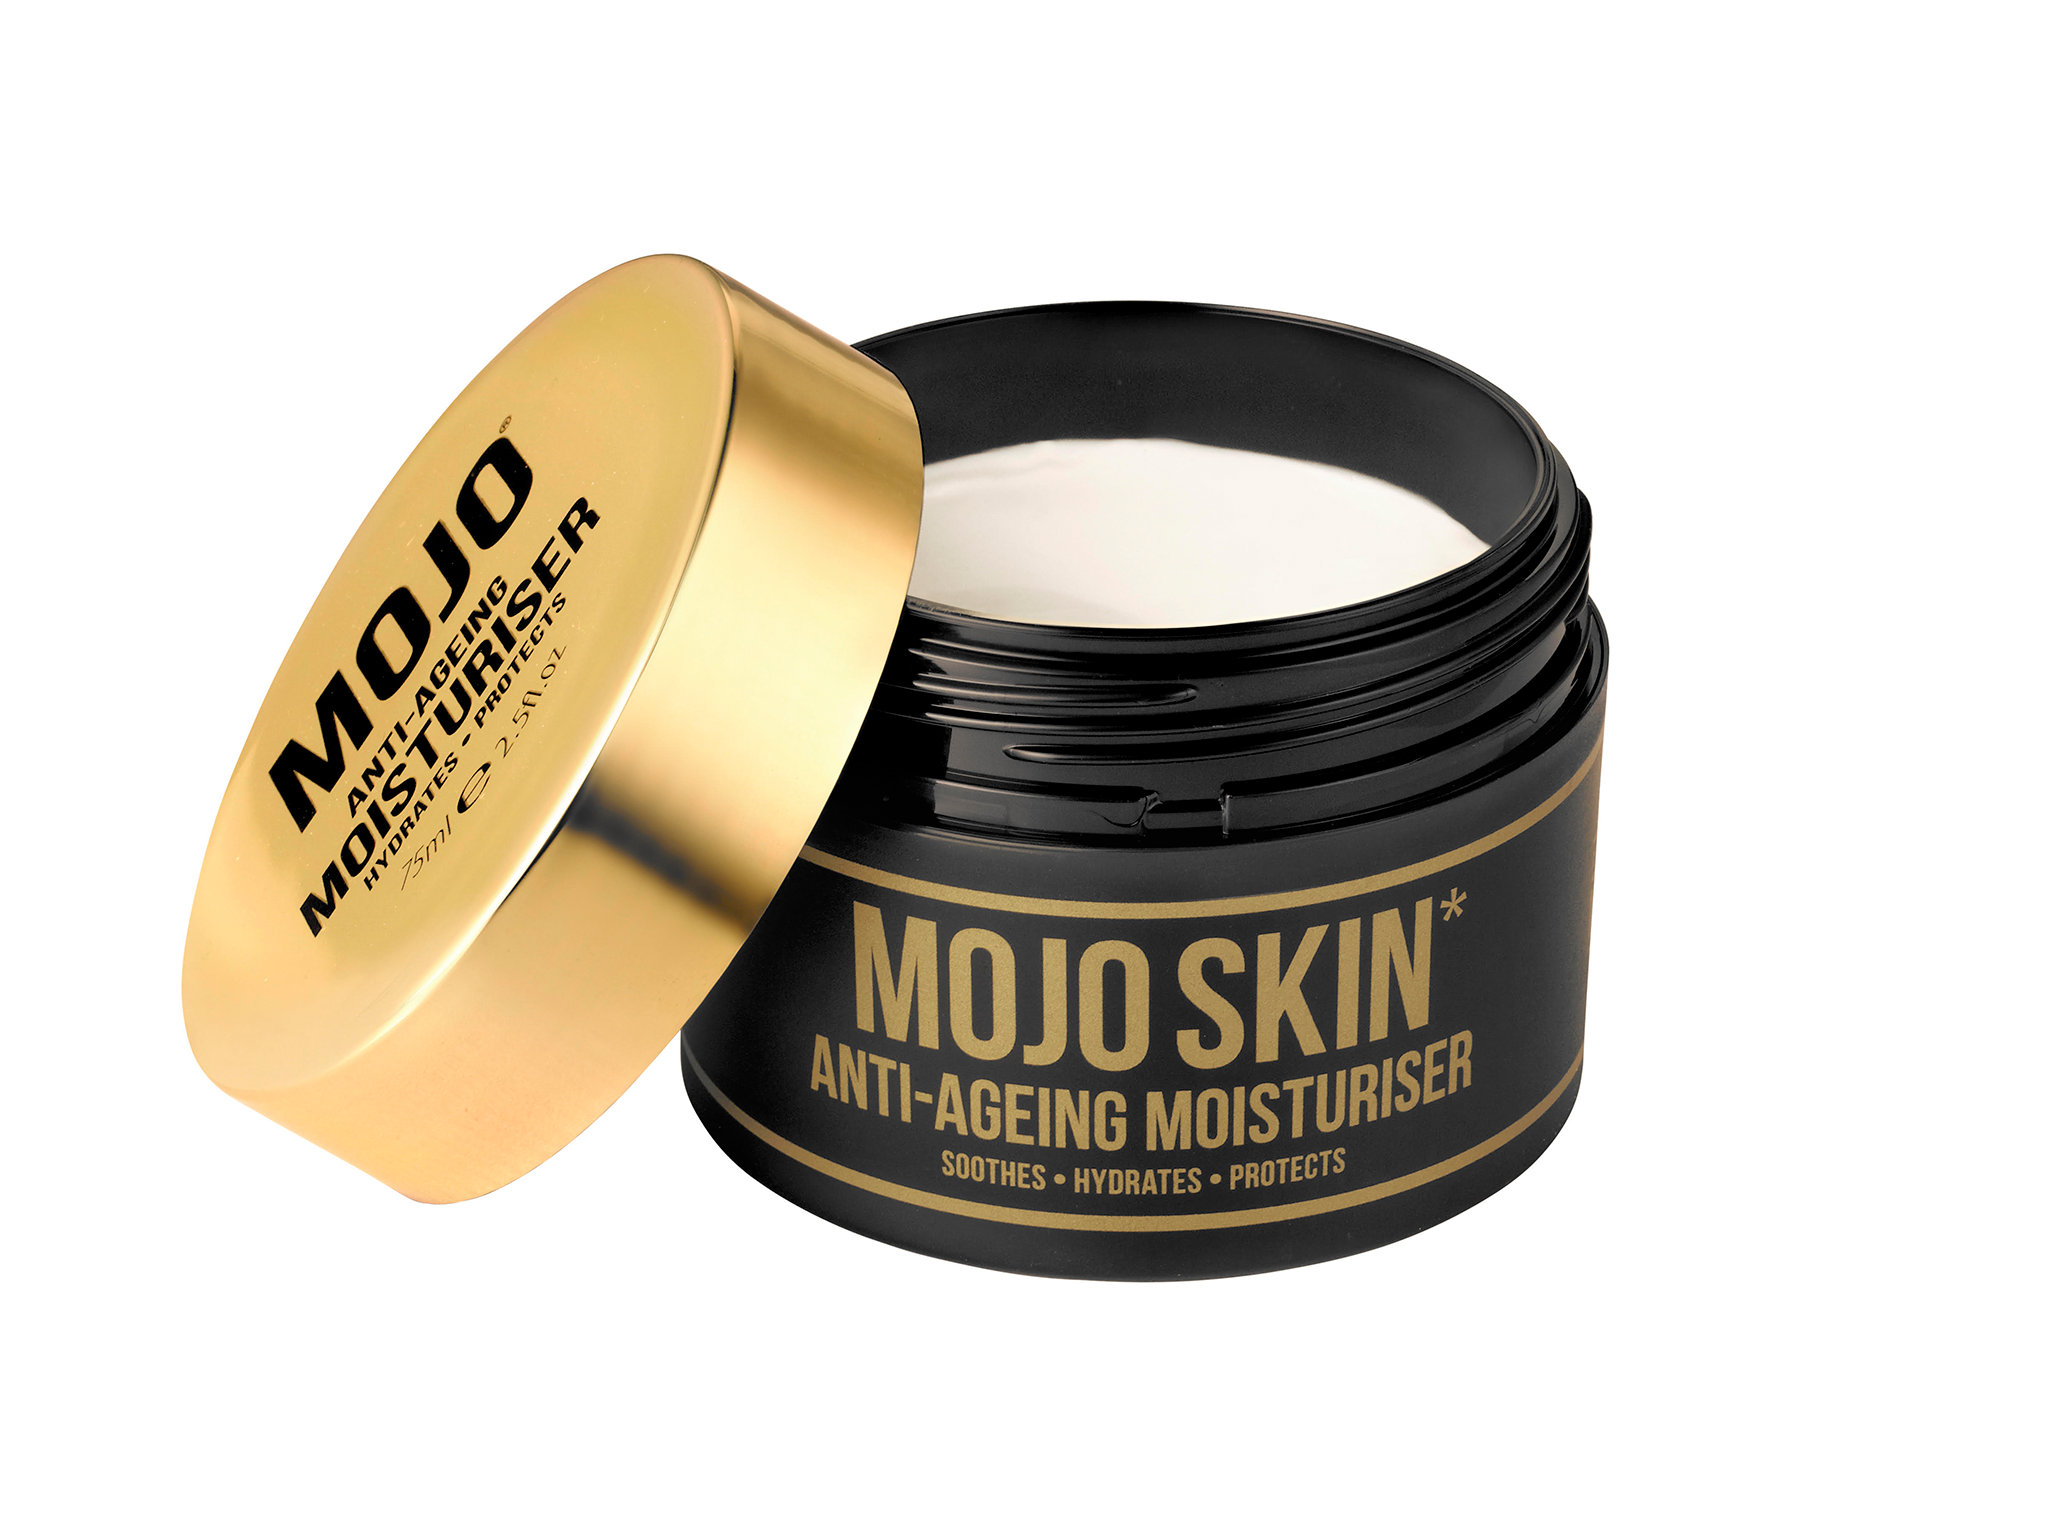 Mojo anti-ageing moisturiser